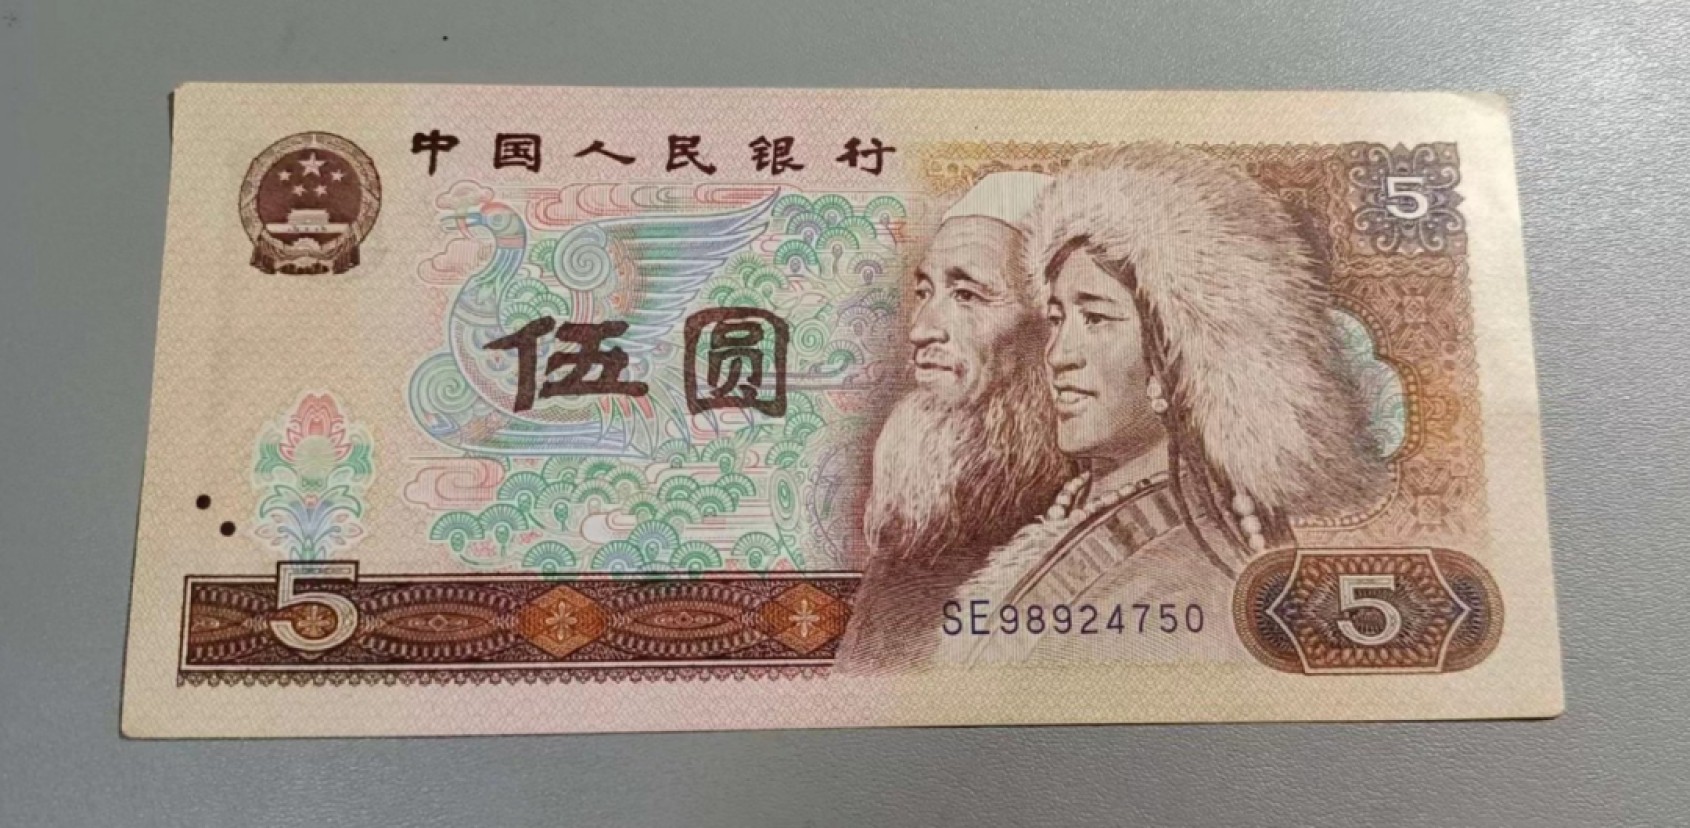 旧版五元纸币